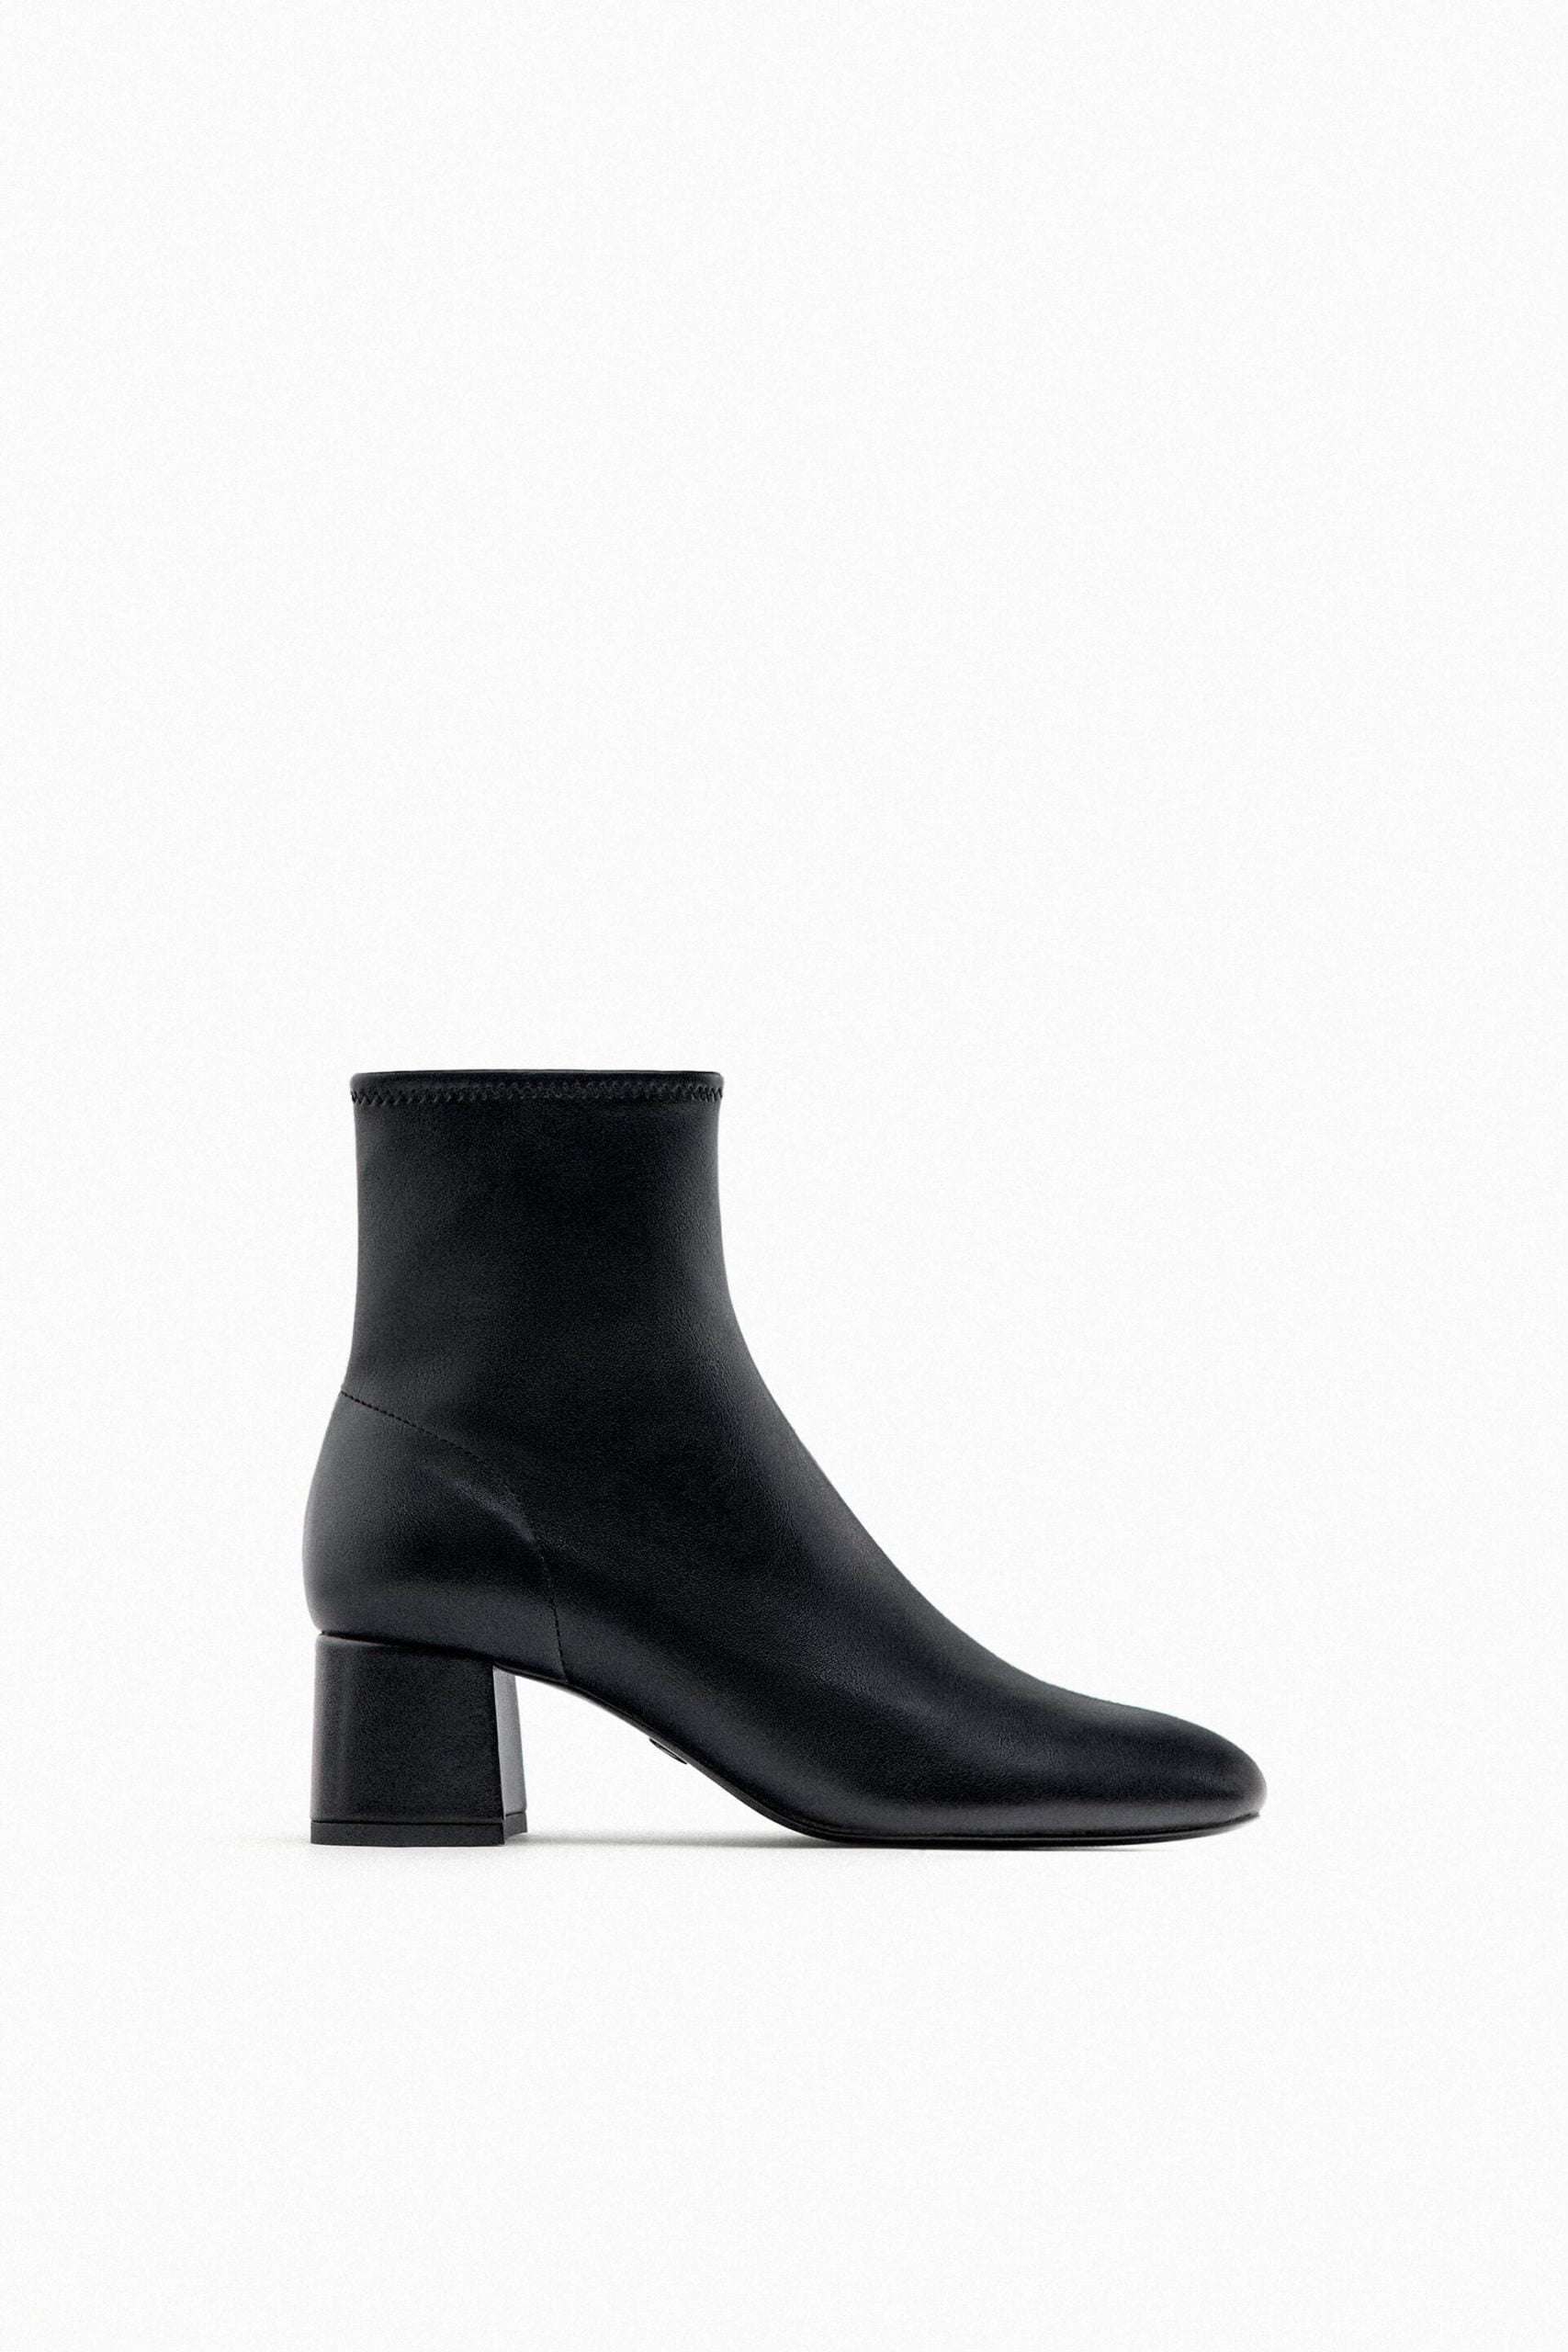 Botas calcetín de Zara en venta online